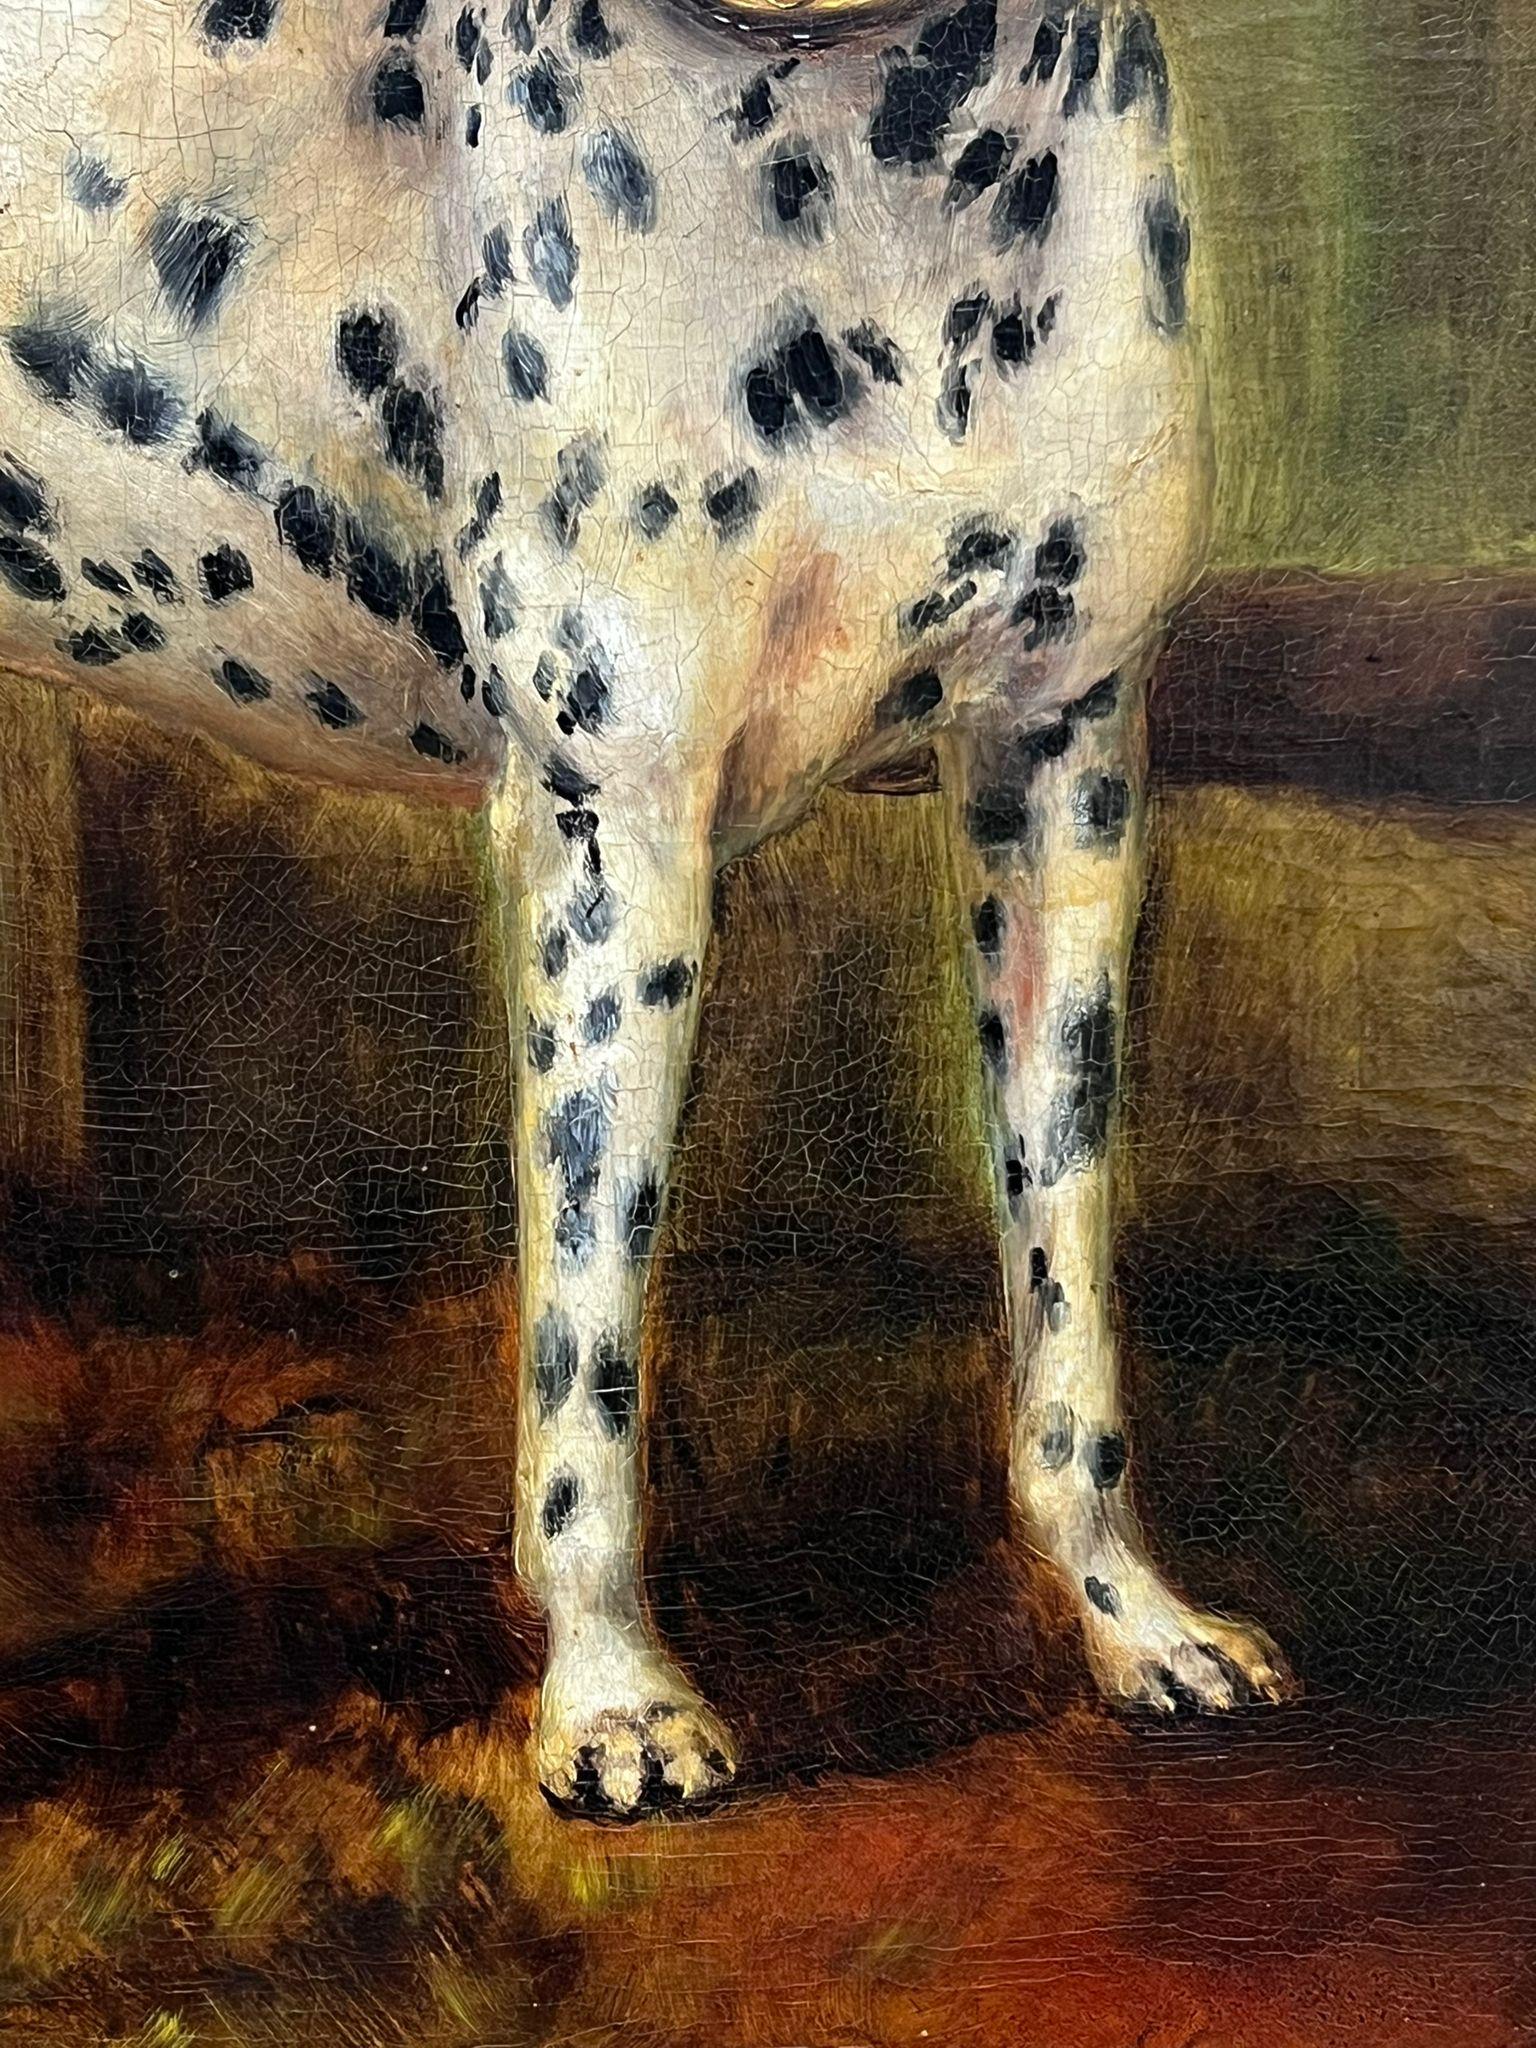 Le chien dalmatien
par Adrienne Lester, Britannique 1870-1955
signé et daté de 1896
huile sur toile, encadrée
encadré : 27 x 32.5 pouces
toile : 25 x 30 pouces
provenance : collection privée
état : très bon état ; veuillez noter que le cadre est